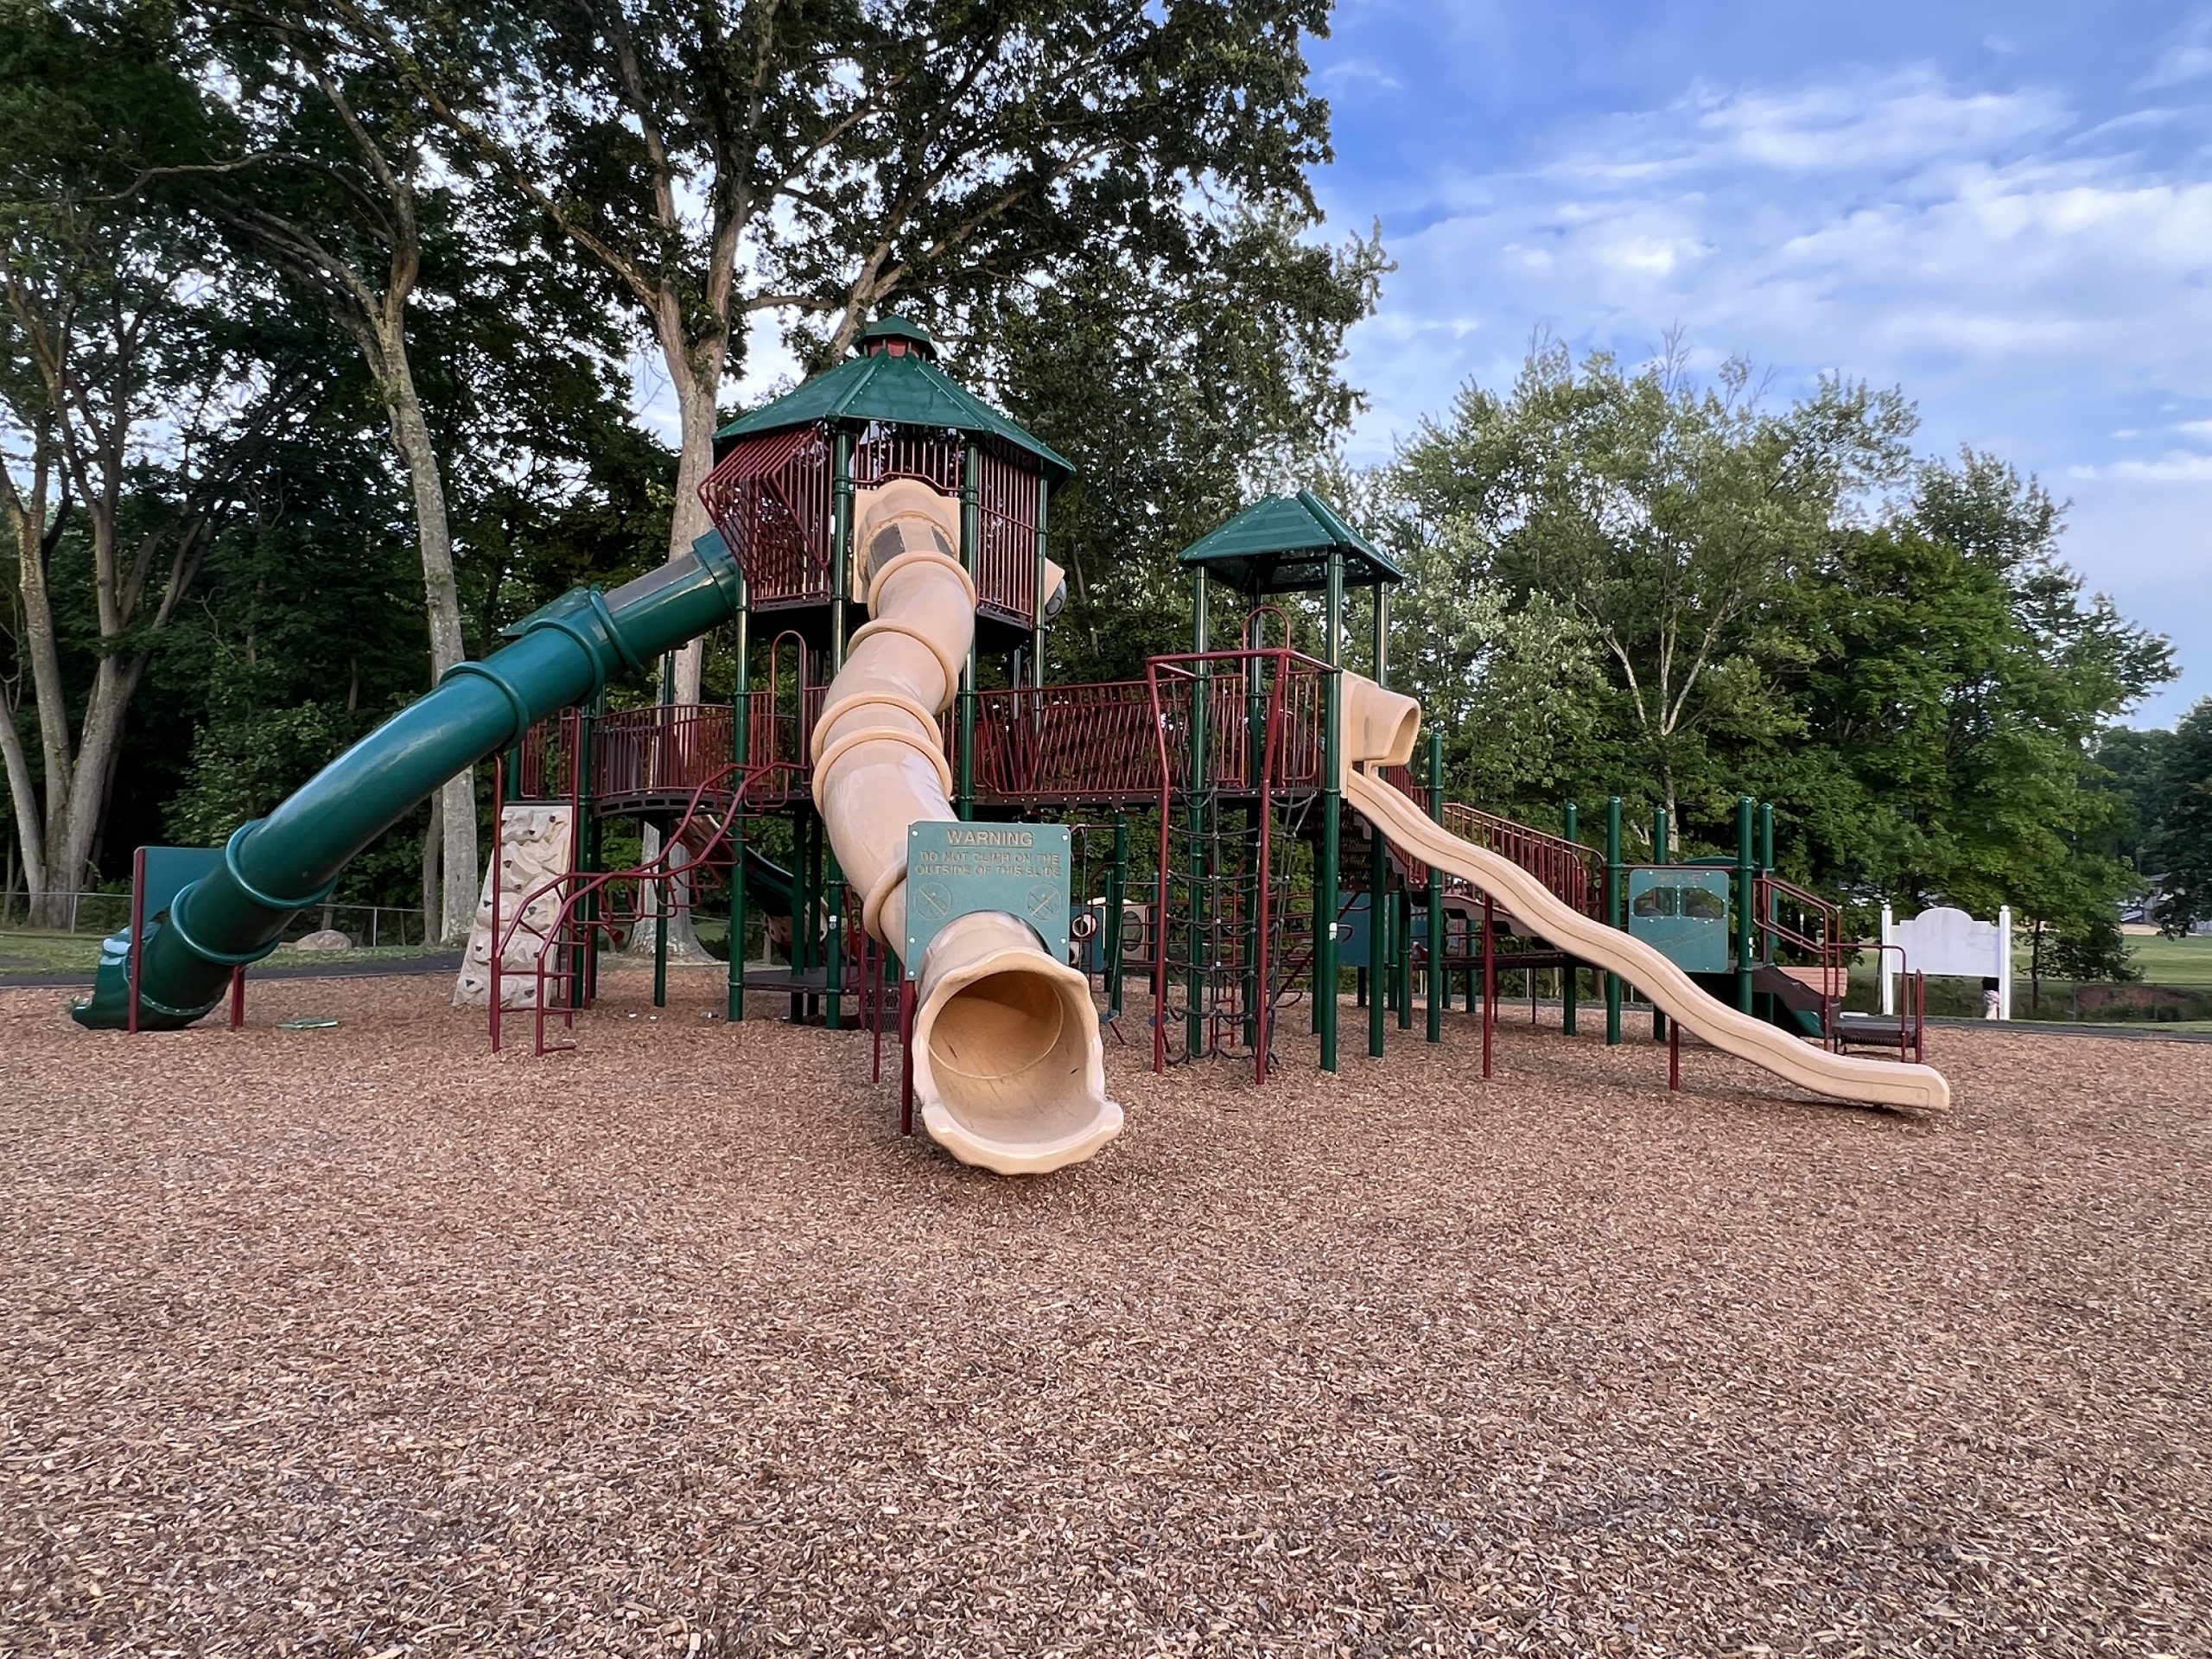 Warren Municipal Park Playground in Warren NJ SLIDE 3 slides wide view